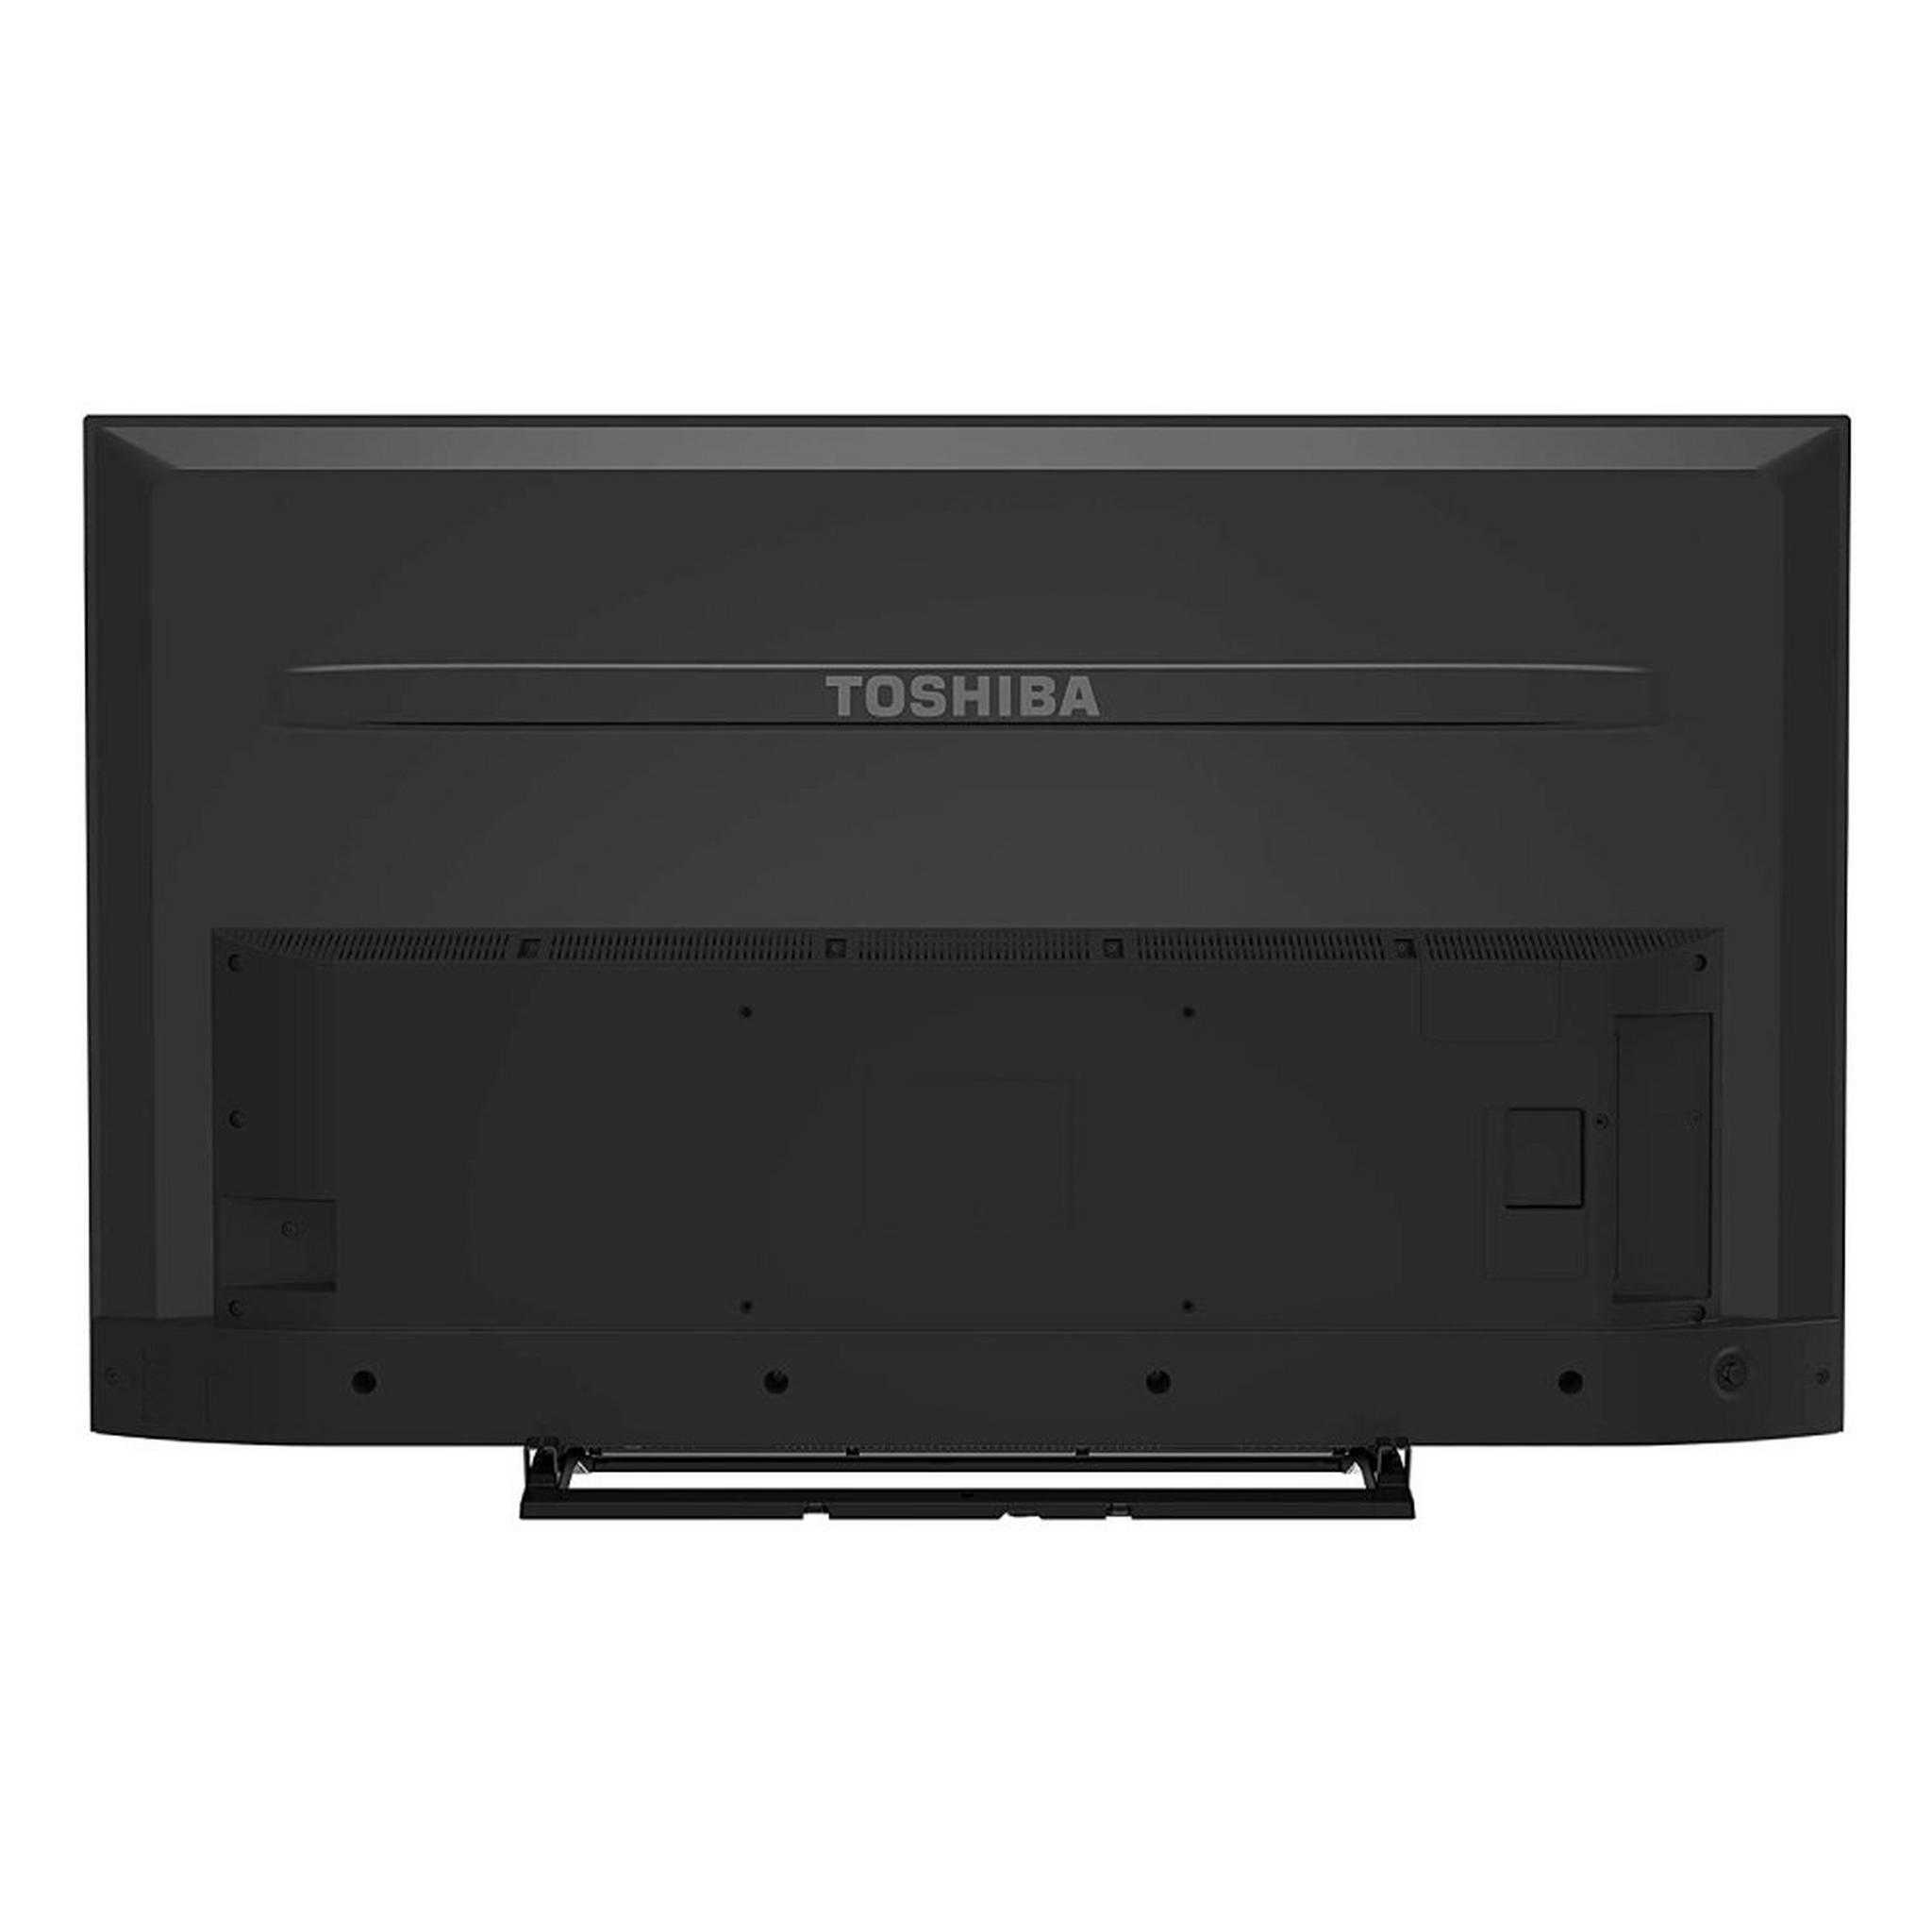 Toshiba TV 55-inch 4K Smart UHD LED - 55U7950EE